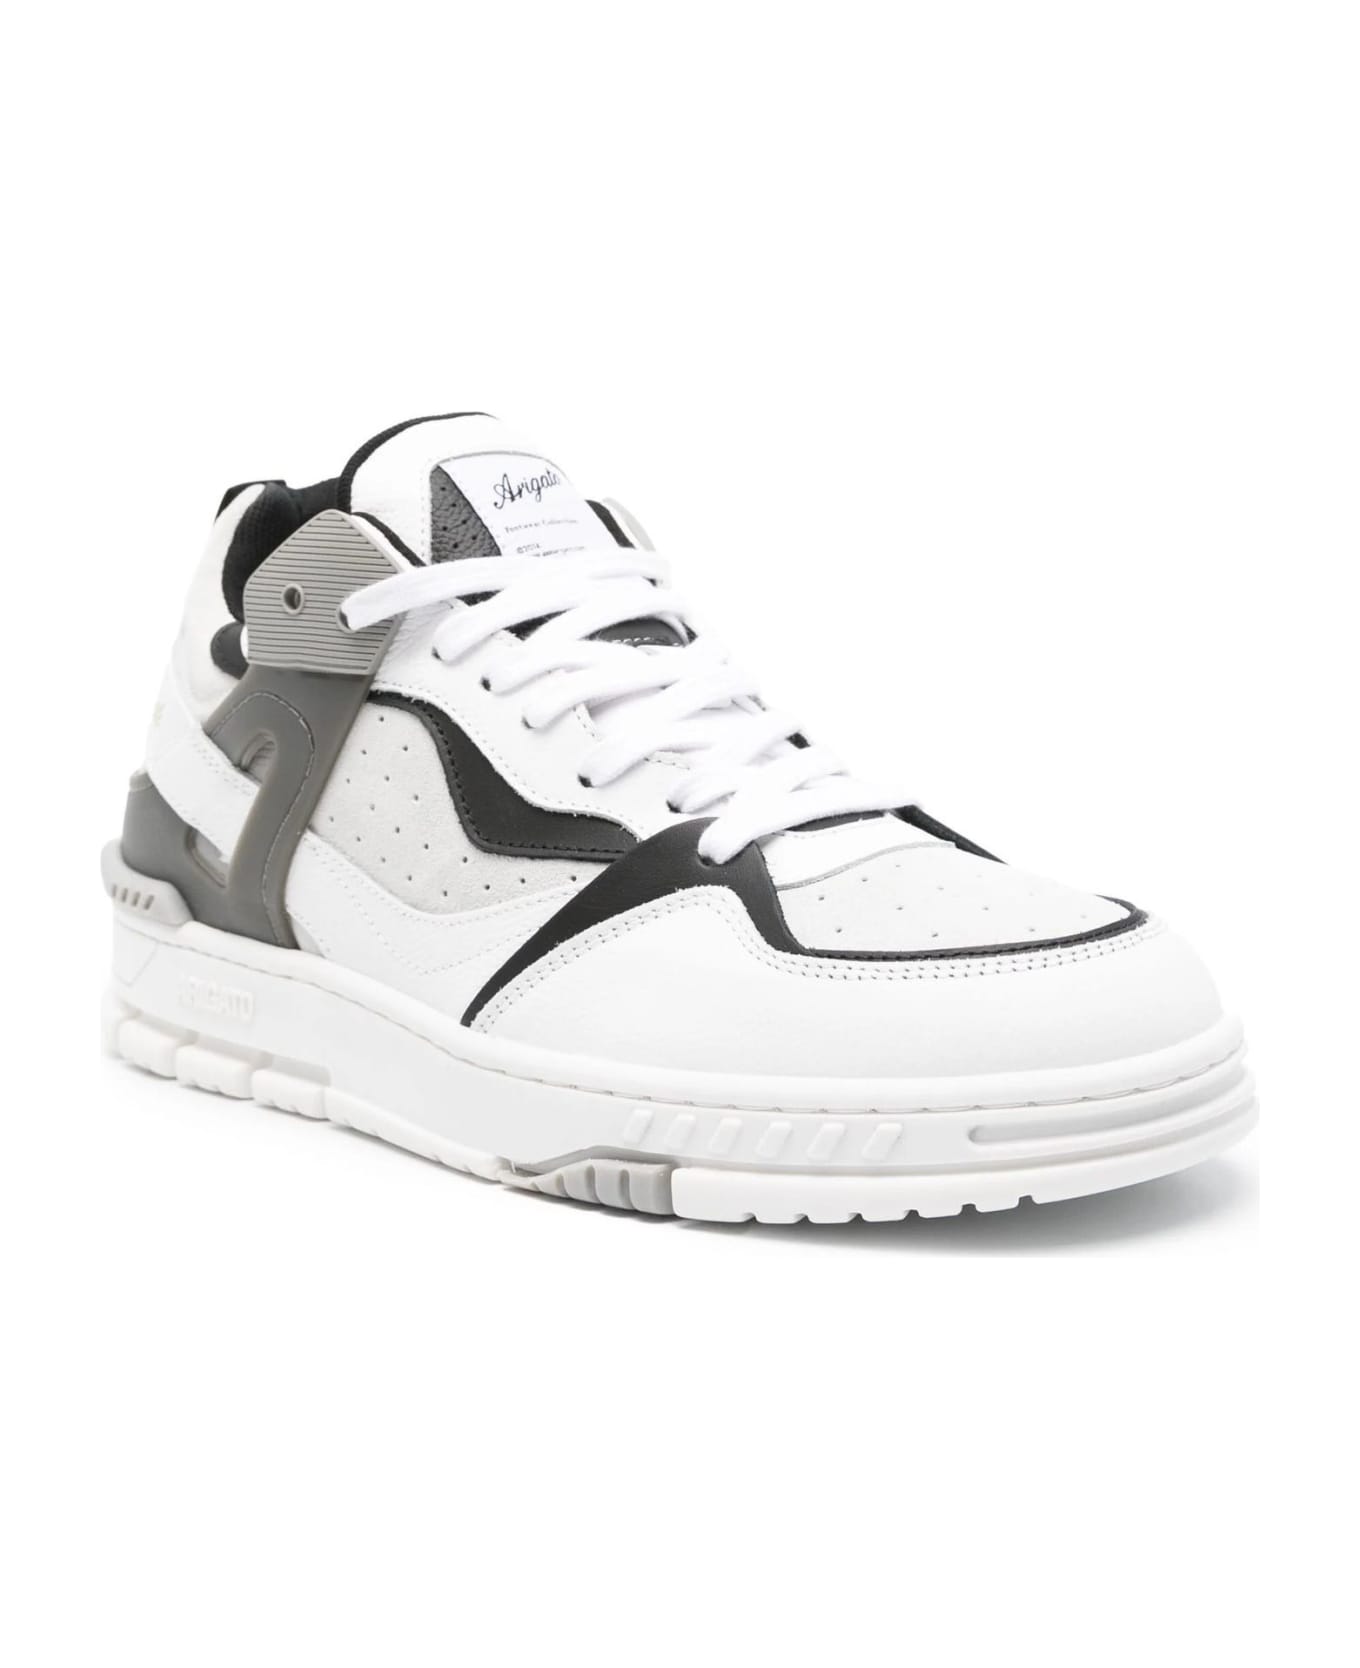 Axel Arigato Sneakers White - White スニーカー